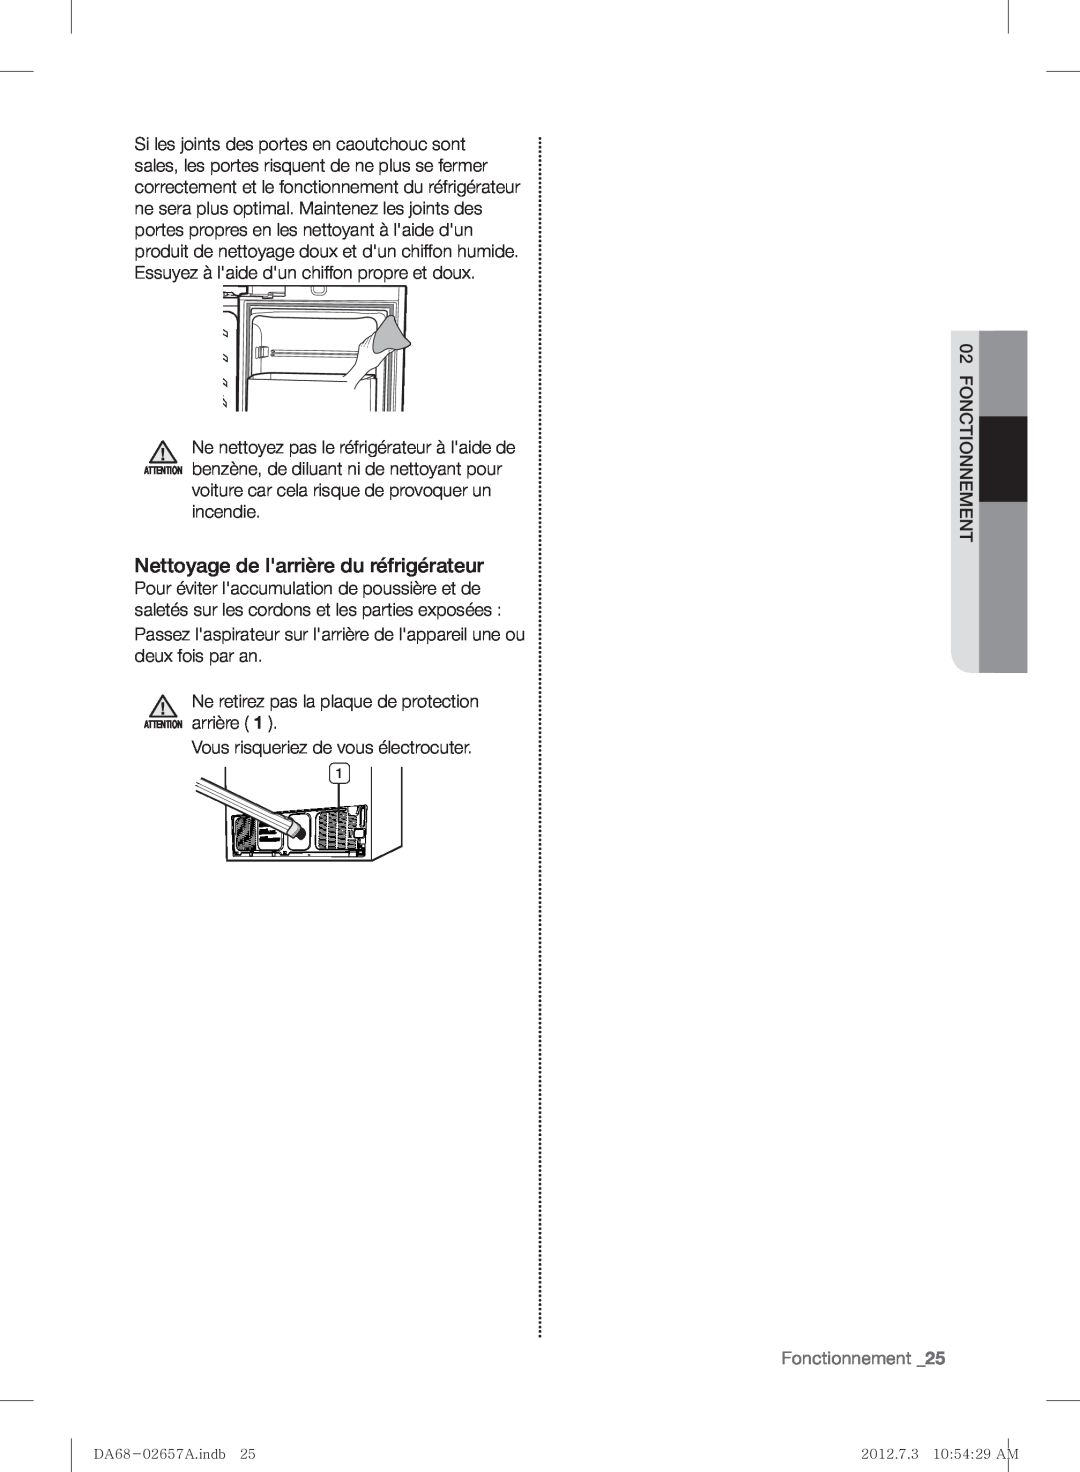 Samsung RF221NCTABC user manual Nettoyage de larrière du réfrigérateur, Fonctionnement 